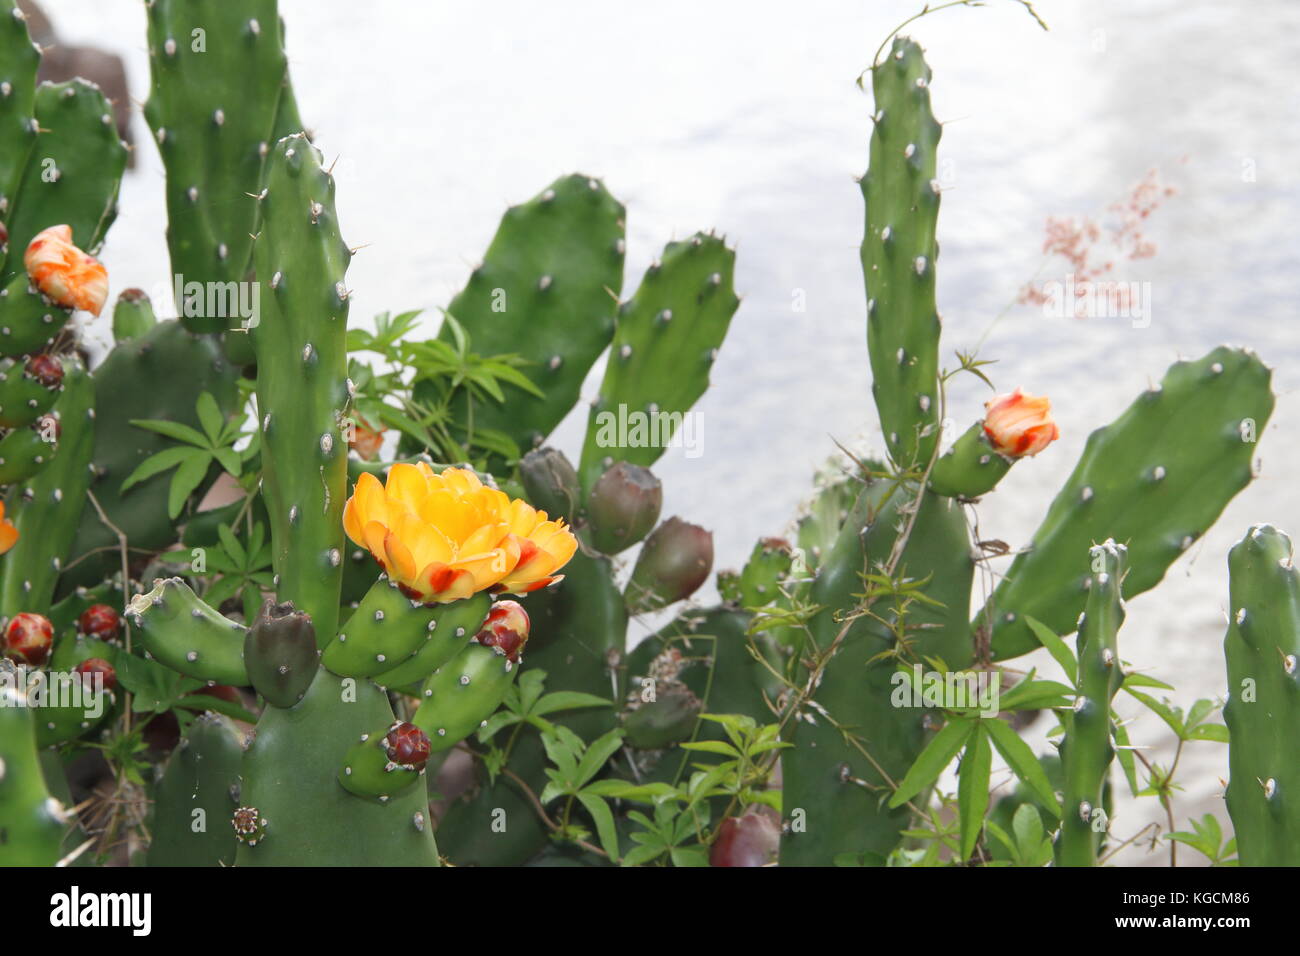 Piante Grasse Con Fiori Gialli.Cactus E Piante Grasse Con Fiori Gialli In Primavera Foto